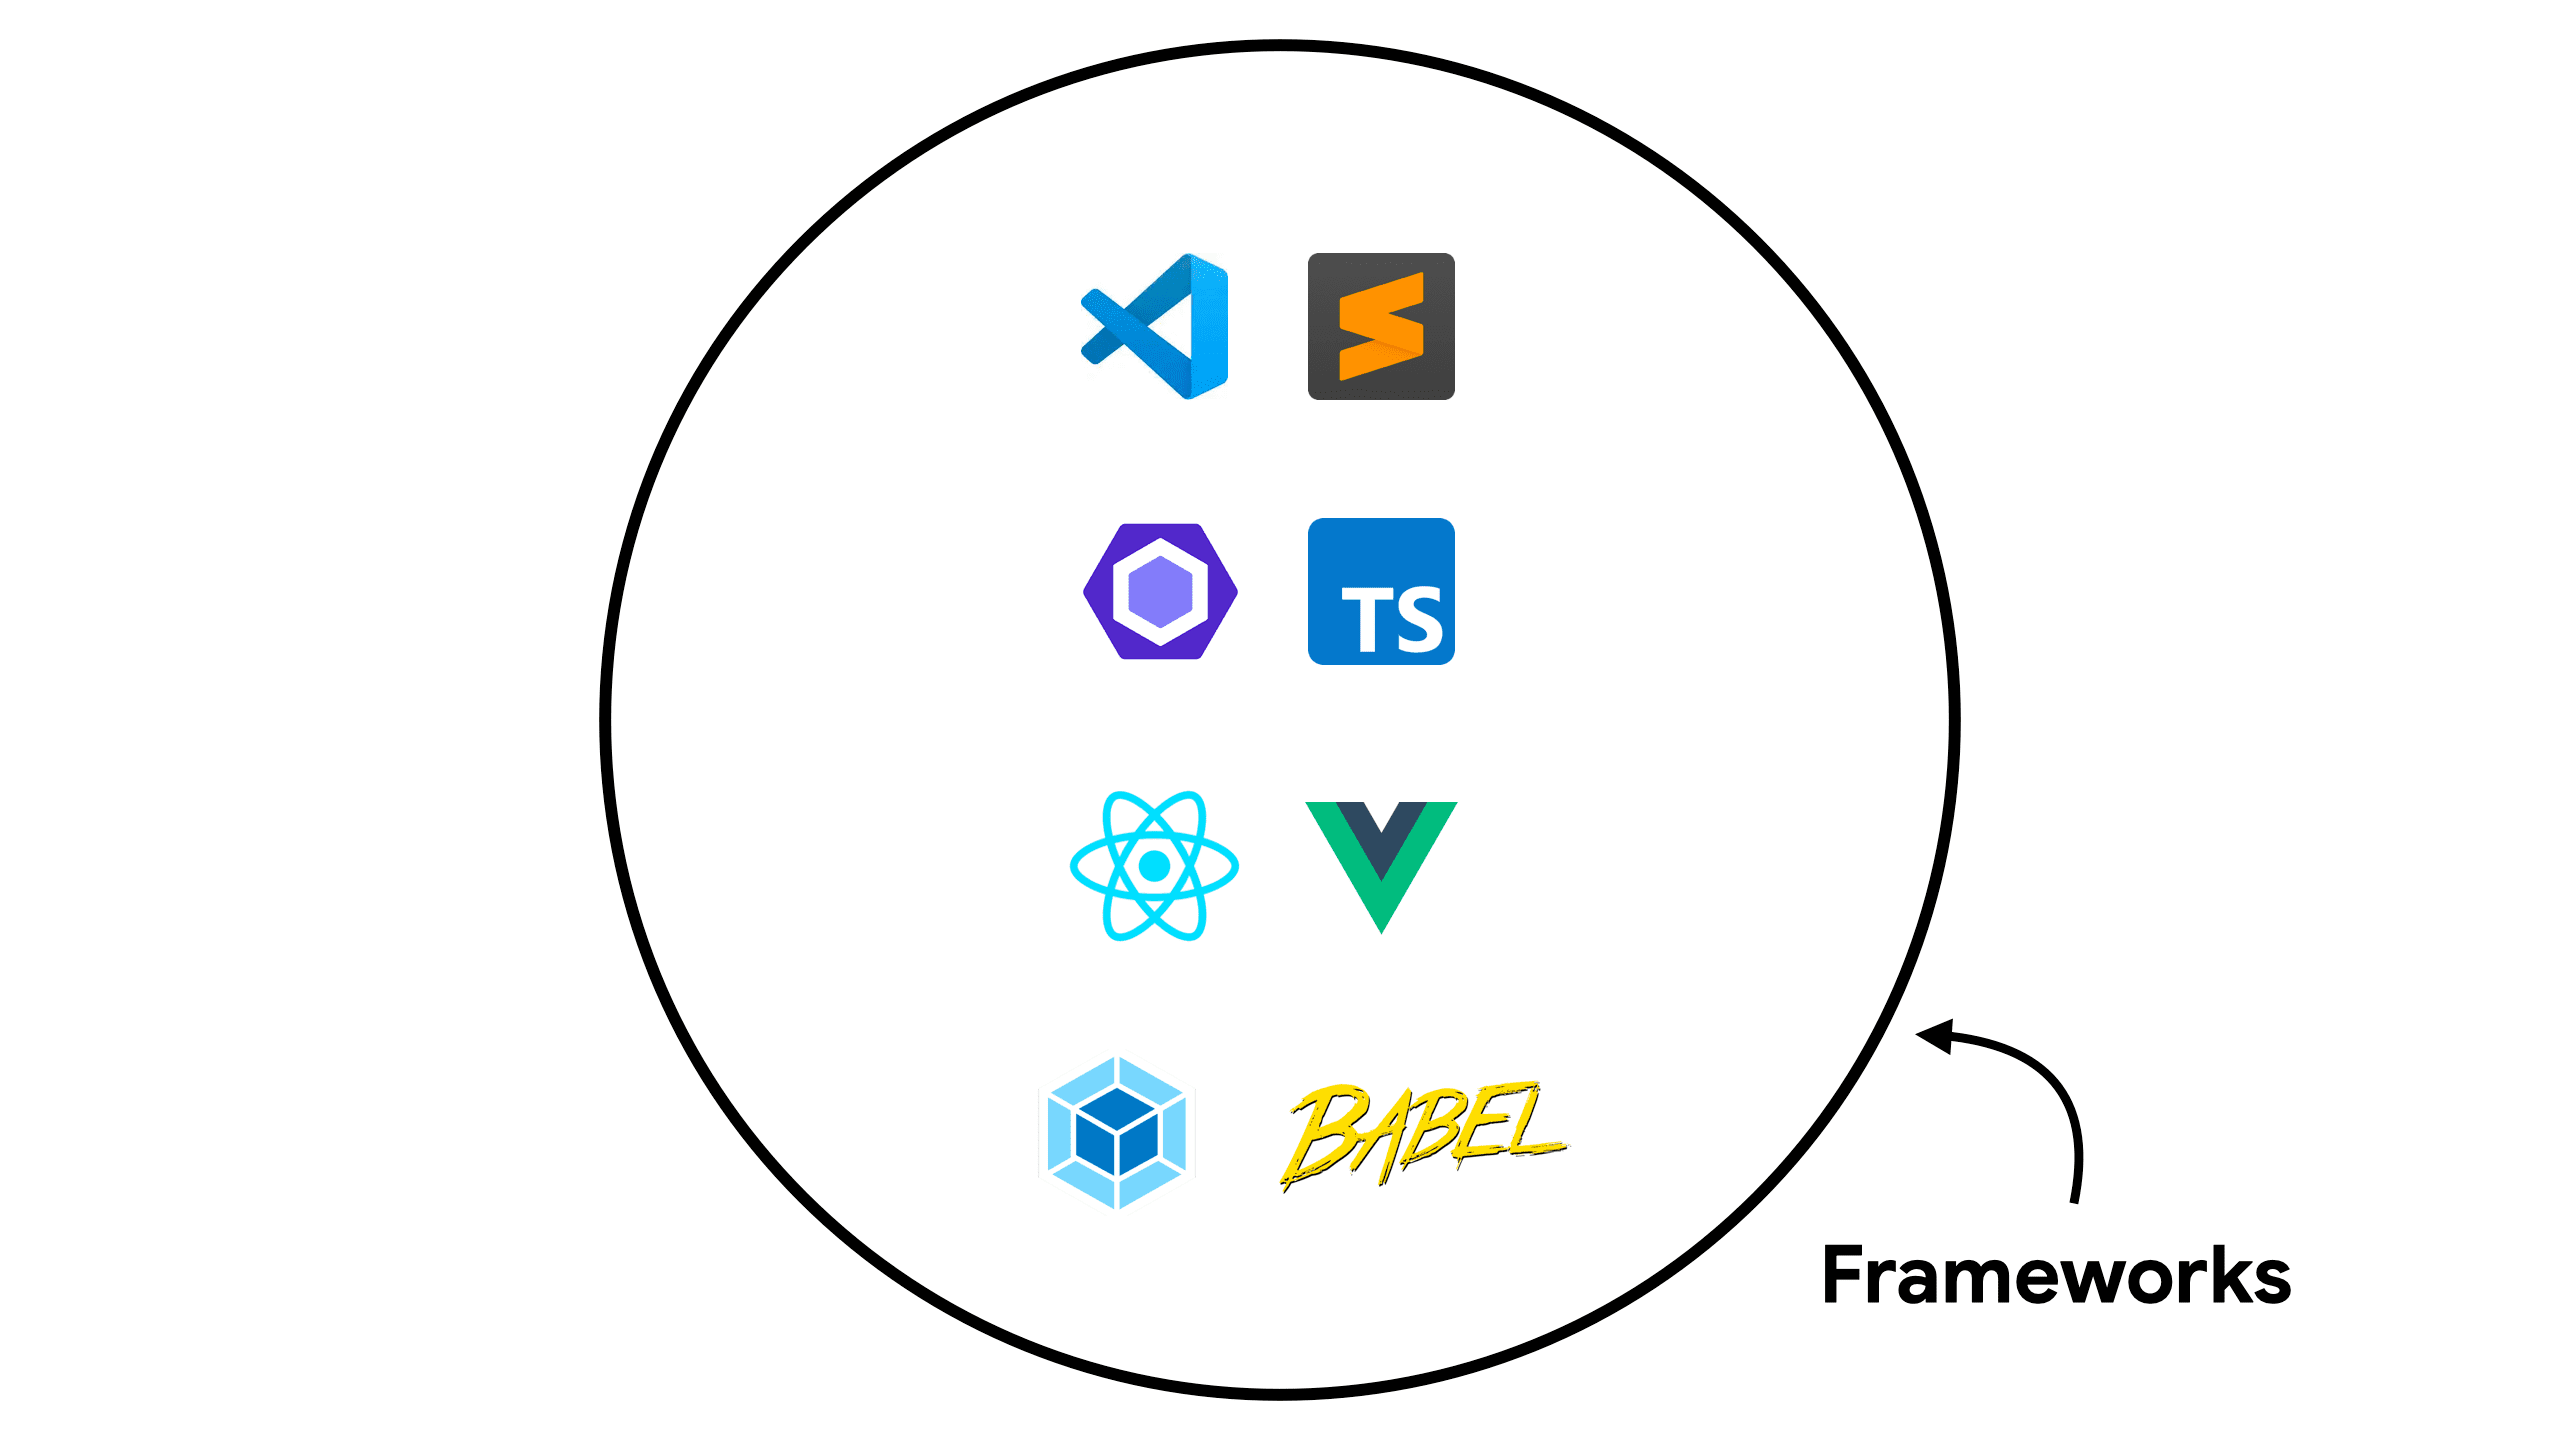 תרשים שמציג כלים נפוצים ב-frameworks